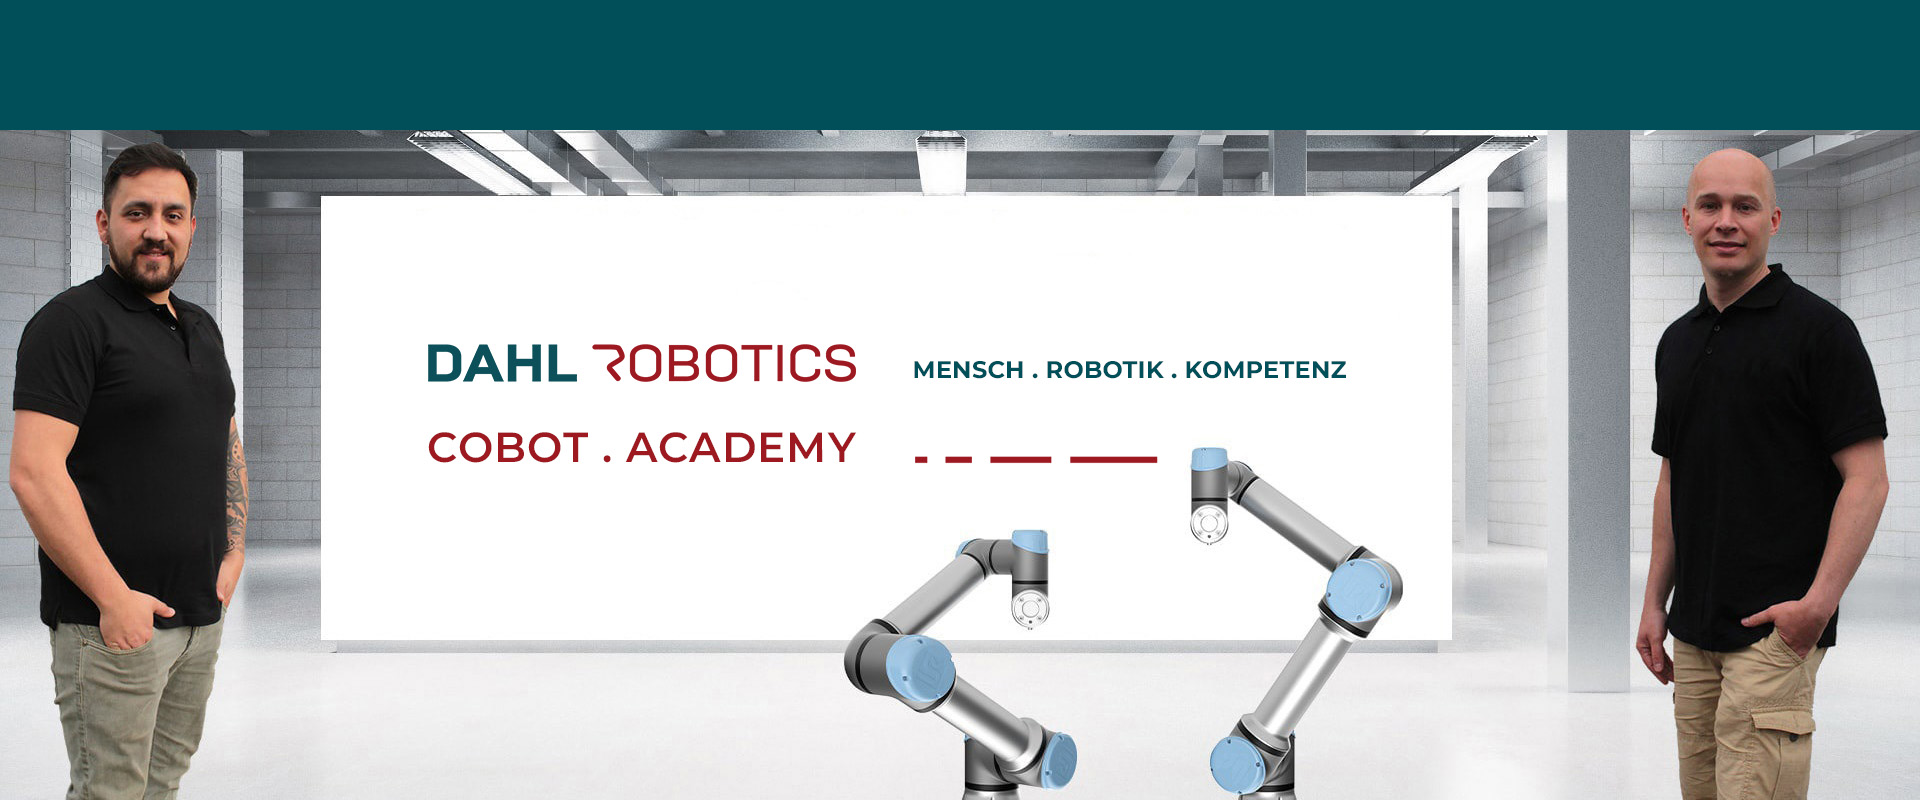 Automatisierung mit kollaborativer Robotik: mR MOBILE ROBOTS in Meinerzhagen / Südwestfalen zeigt, wie es geht - in den Basis-Schulungen der DAHL Robotics COBOT ACADEMY mit Universal Robots.